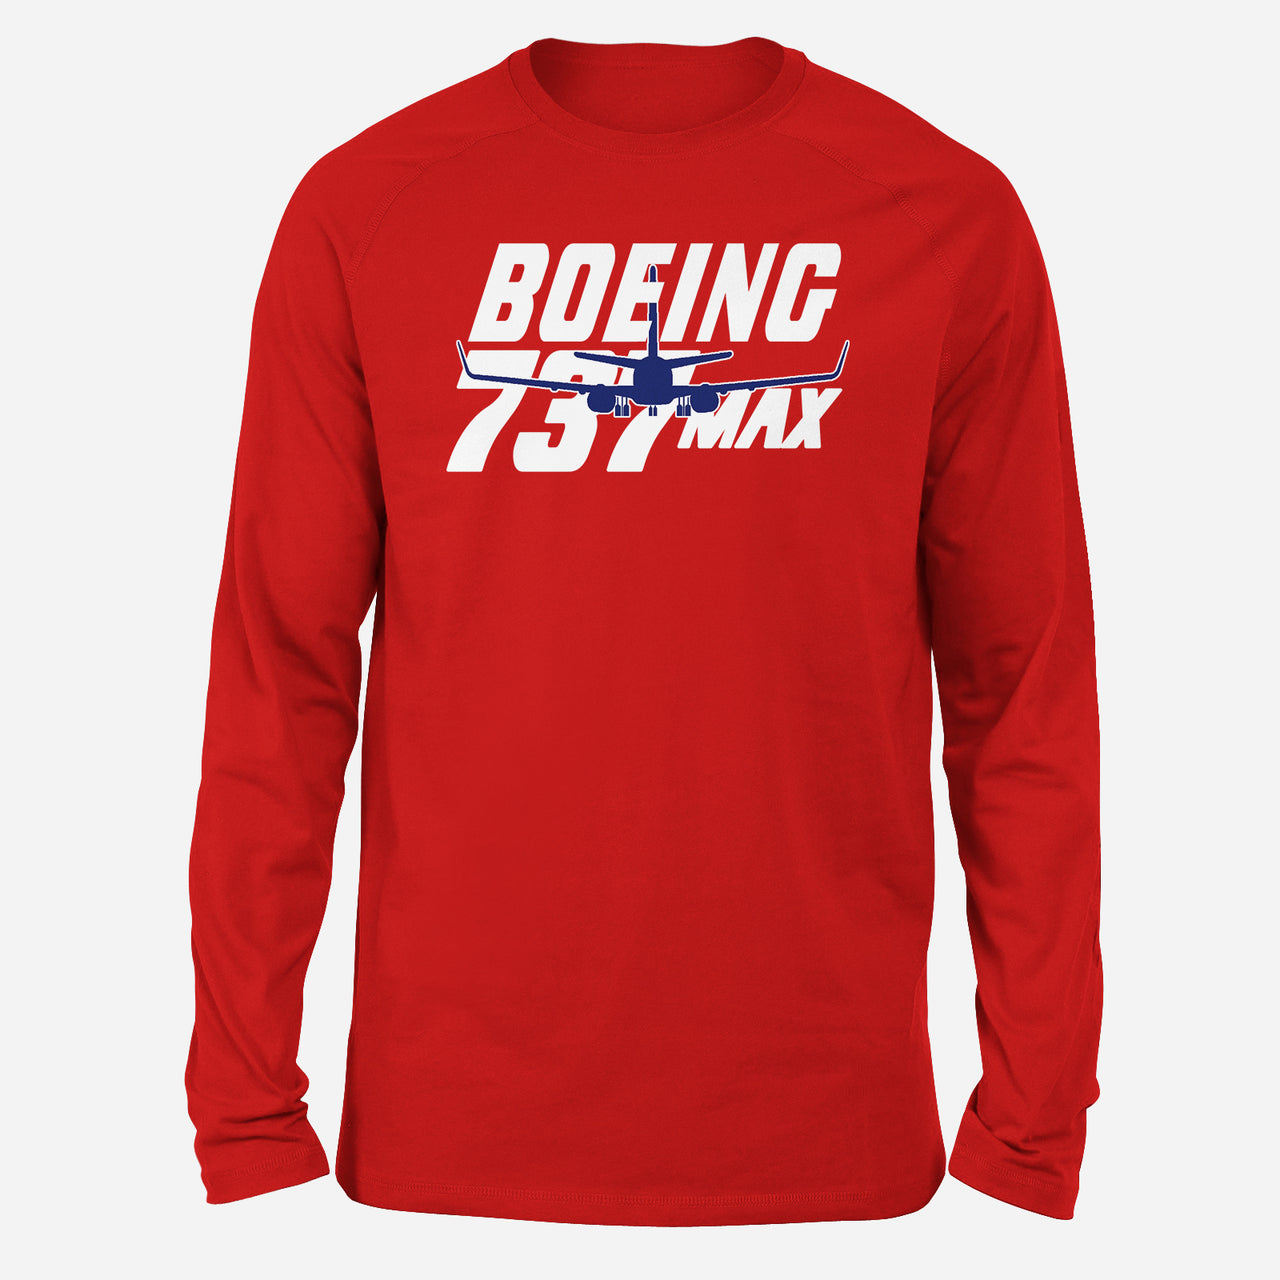 Amazing Boeing 737 Max Designed Long-Sleeve T-Shirts